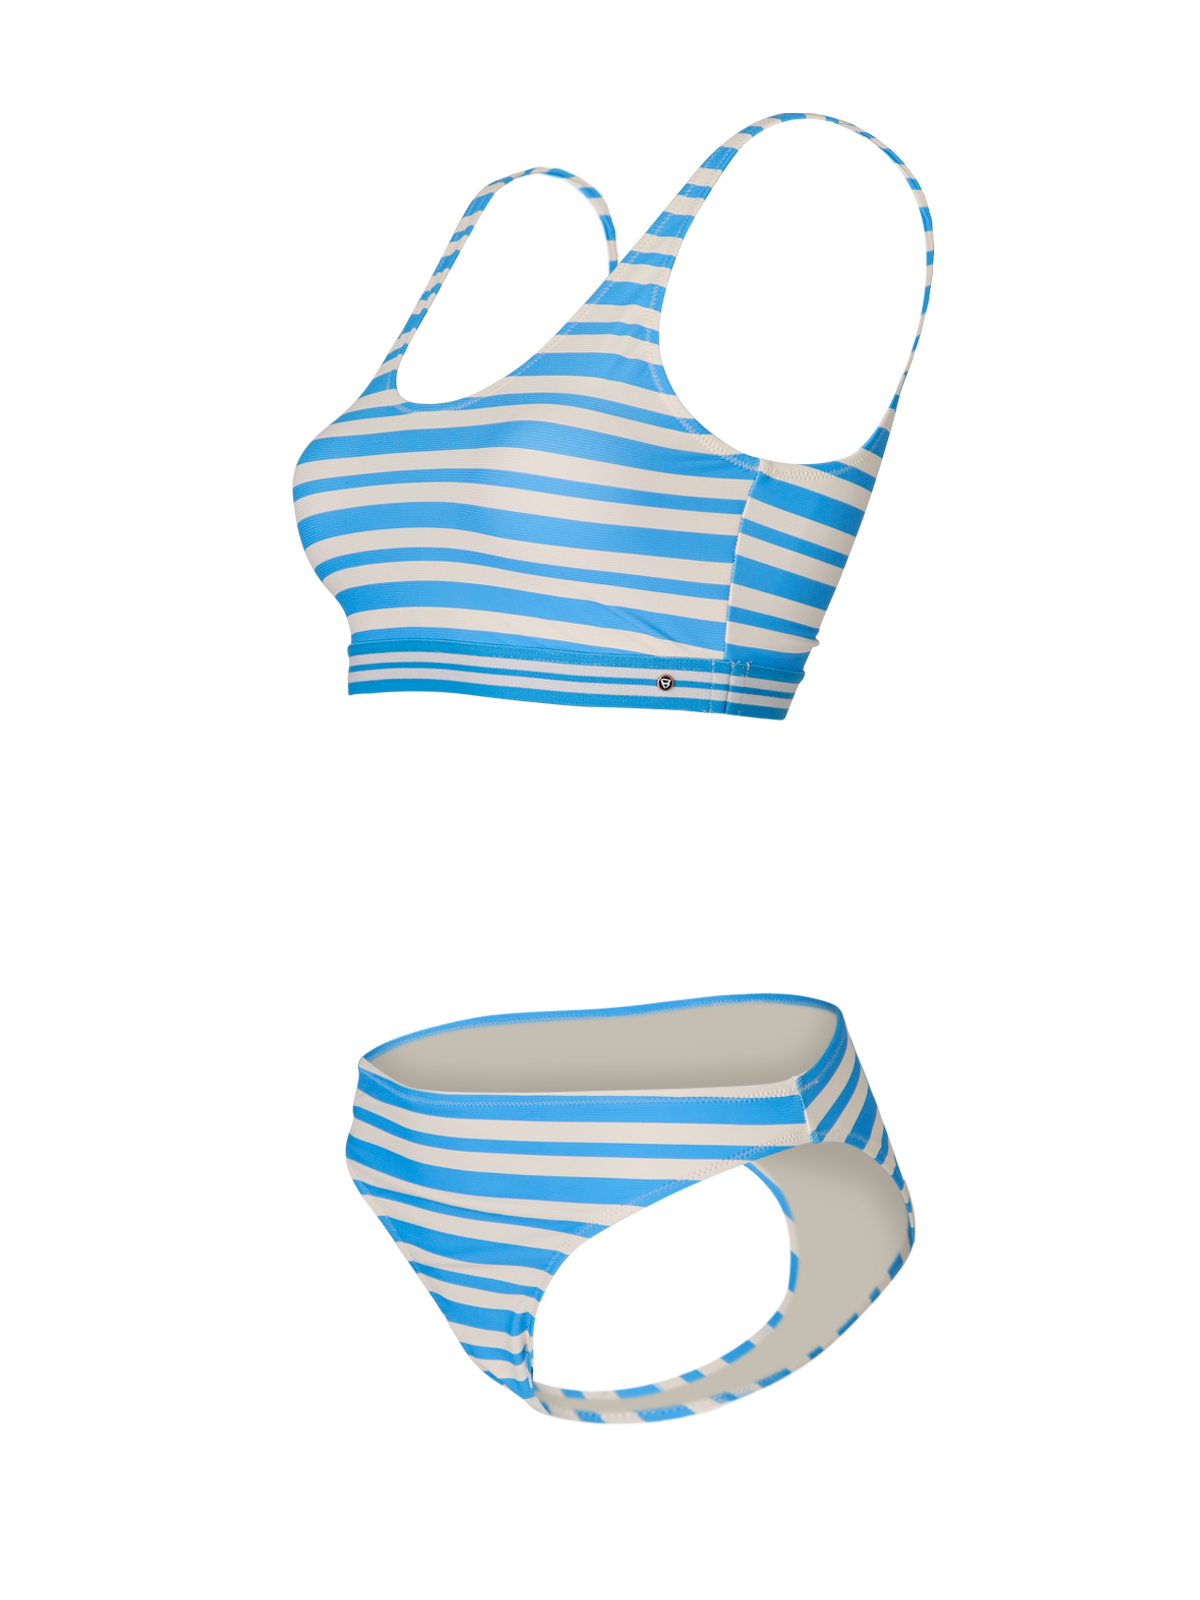 Isabella-YD Damen Sport Bikini | Blau